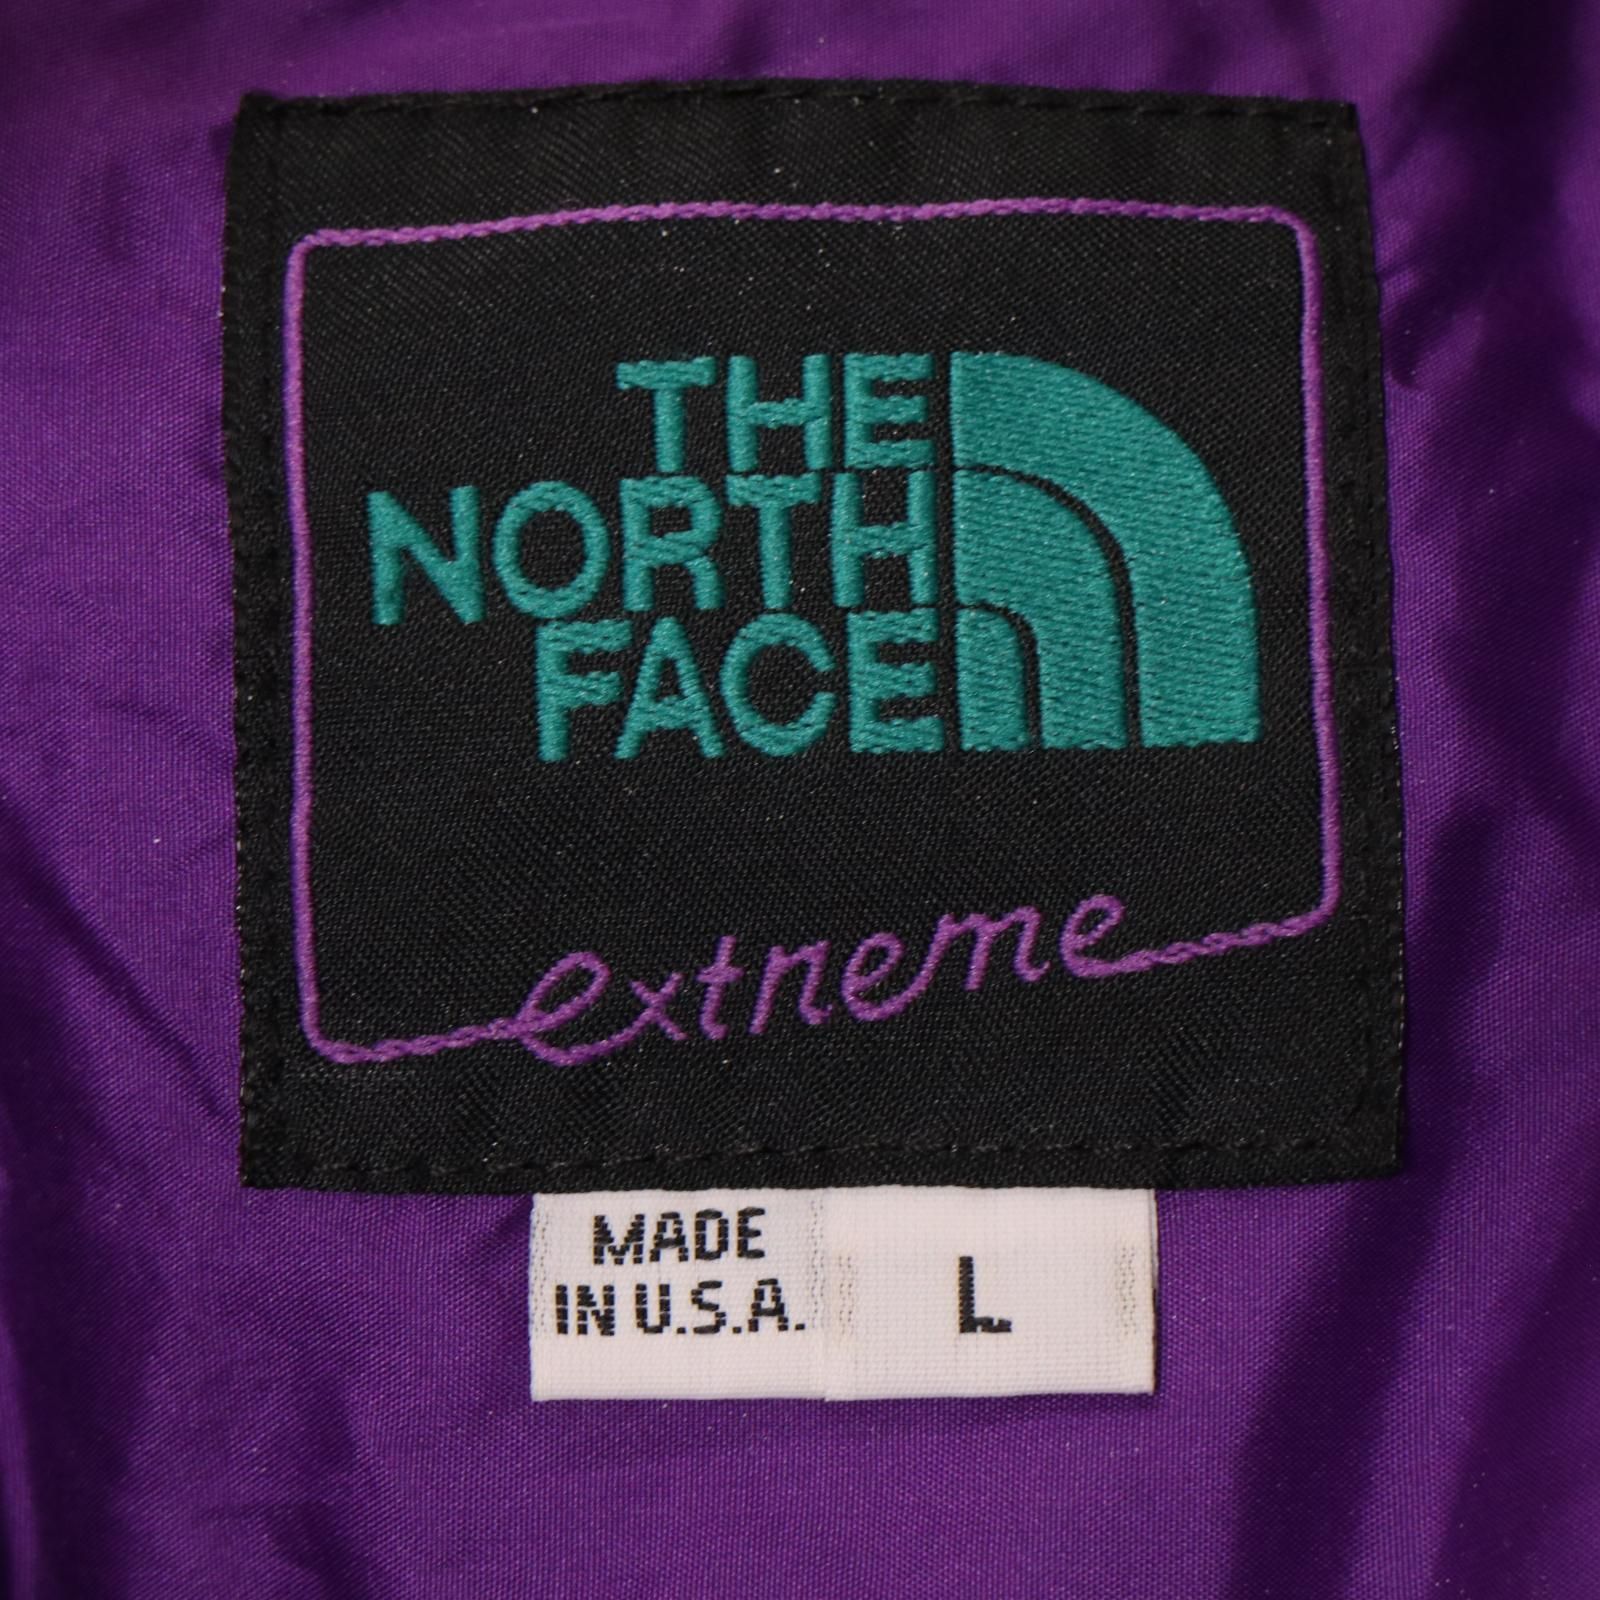 90年代 USA製 THE NORTH FACE ノースフェイス Extreme 中綿ナイロンジャケット エメラルドグリーン (メンズ L) 中古  古着 A0134